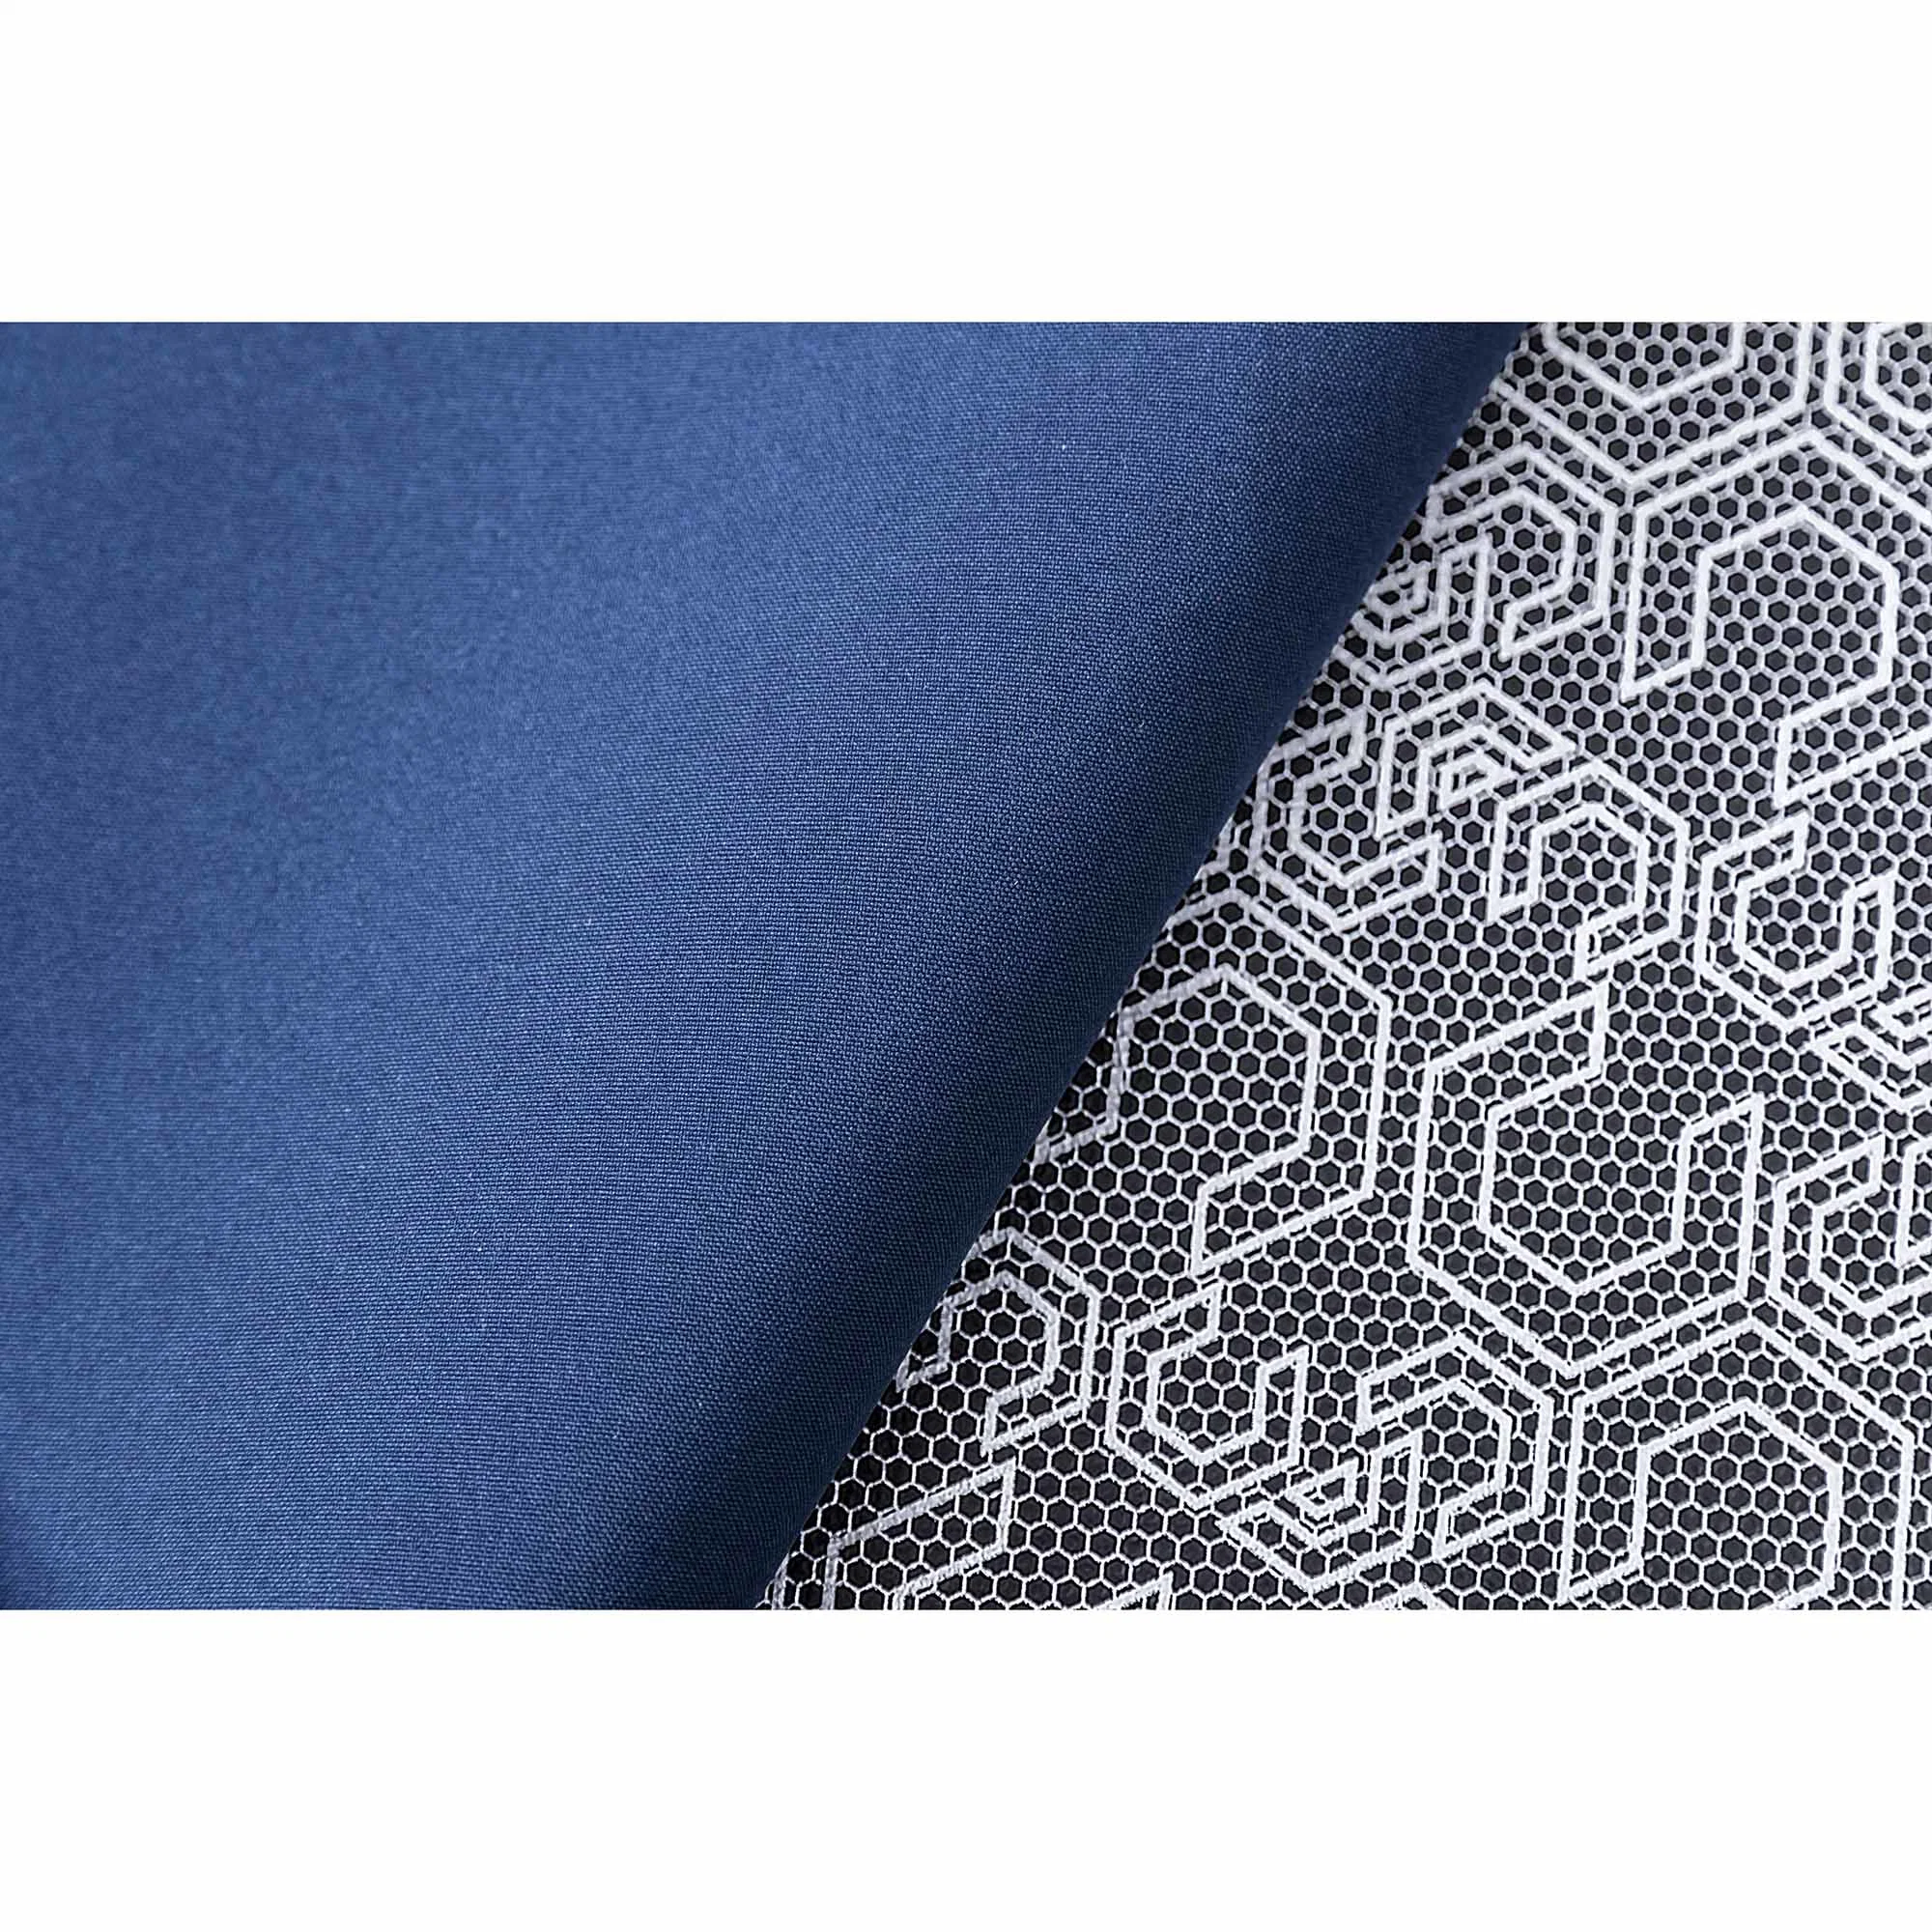 Altamente Técnicas 100% poliéster Tikko colados com 20D único tecido Jersey impressão dos dois lados em TPU para laminação